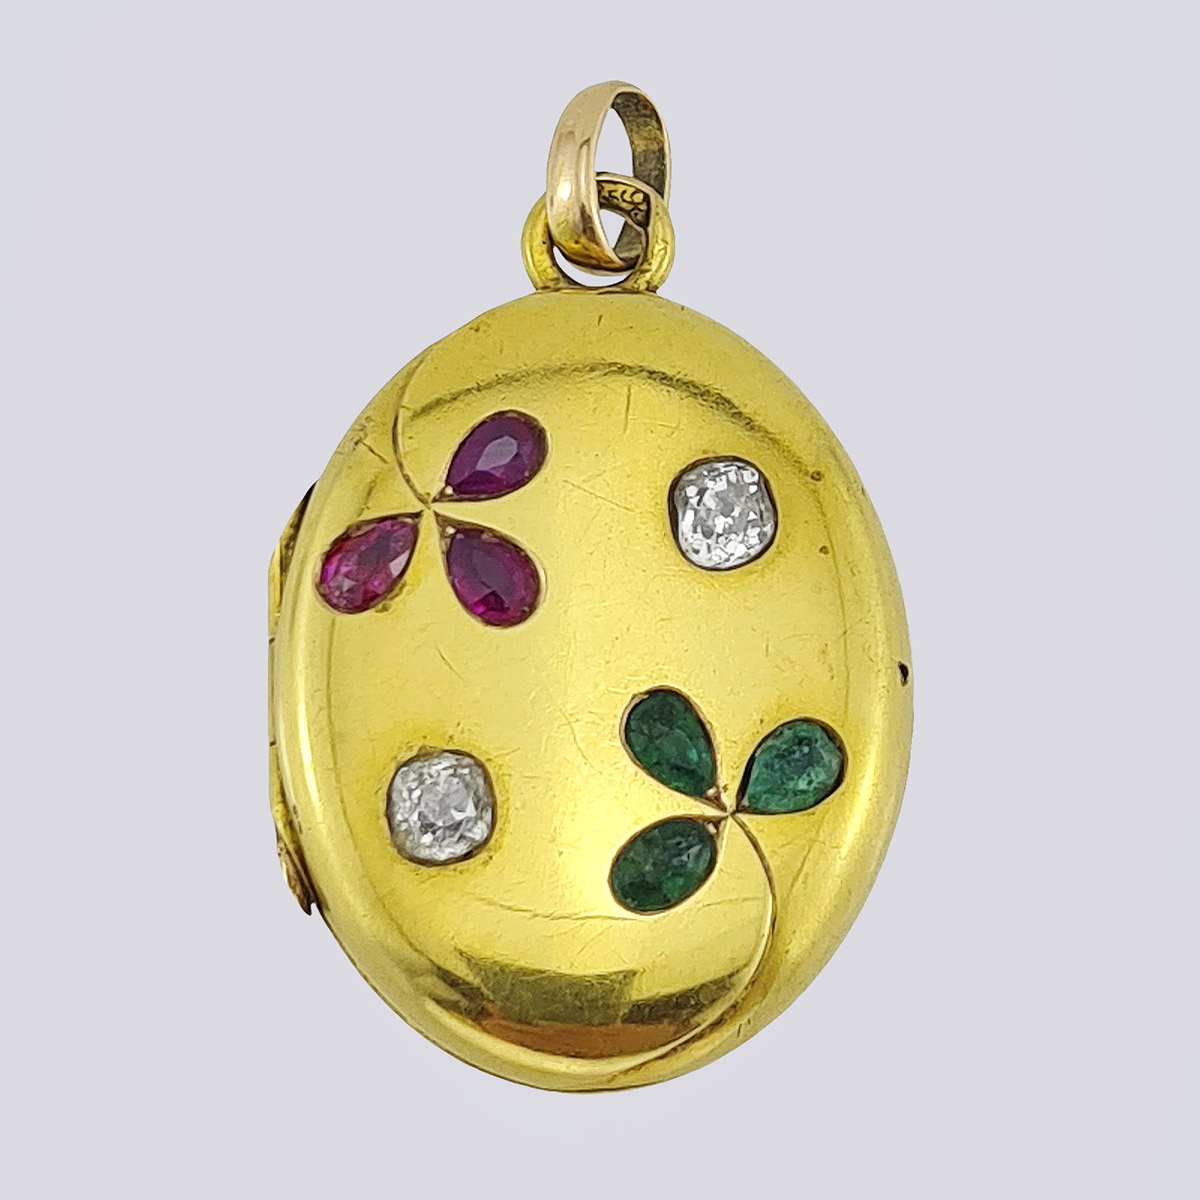 Медальон антикварный золотой 56 пробы с бриллиантами старой огранки, рубинами и изумрудами природными